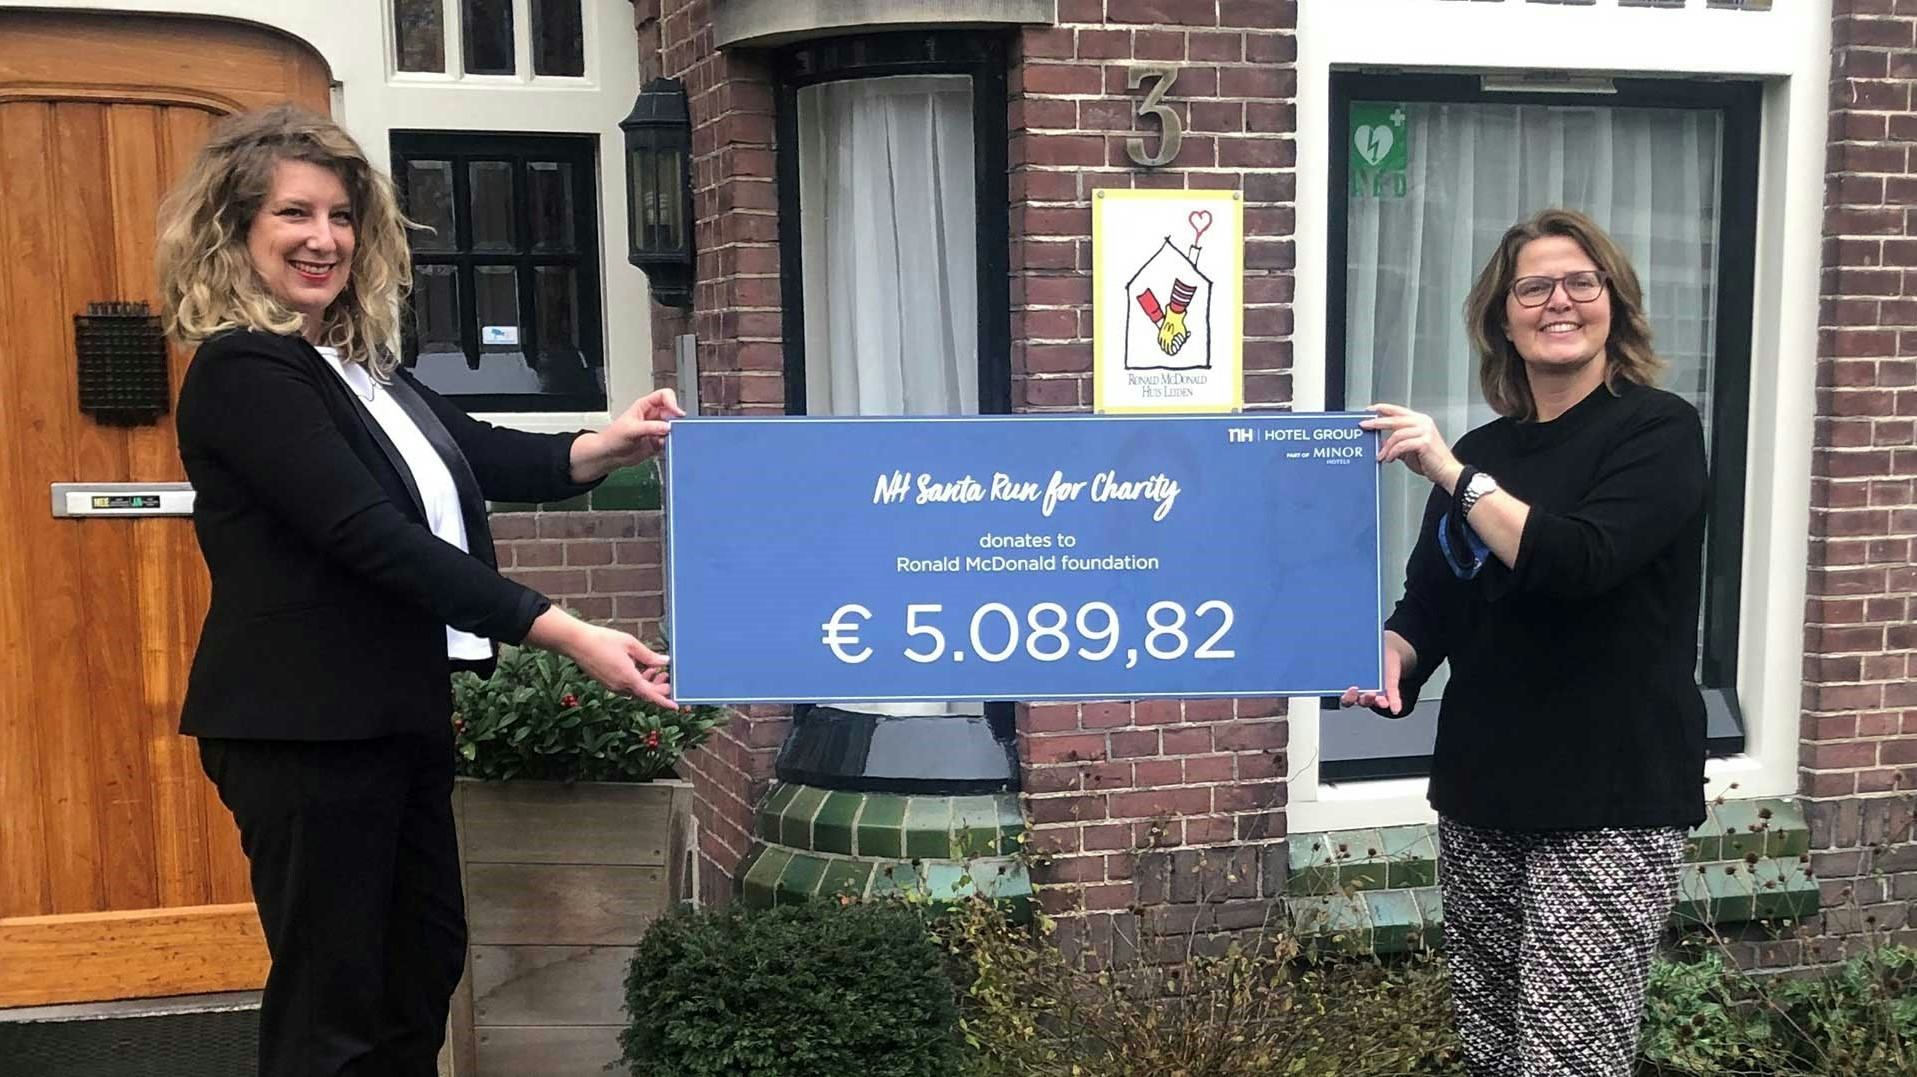 Medewerkers NH Hotel Group halen €5000 op voor Ronald McDonald Kinderfonds